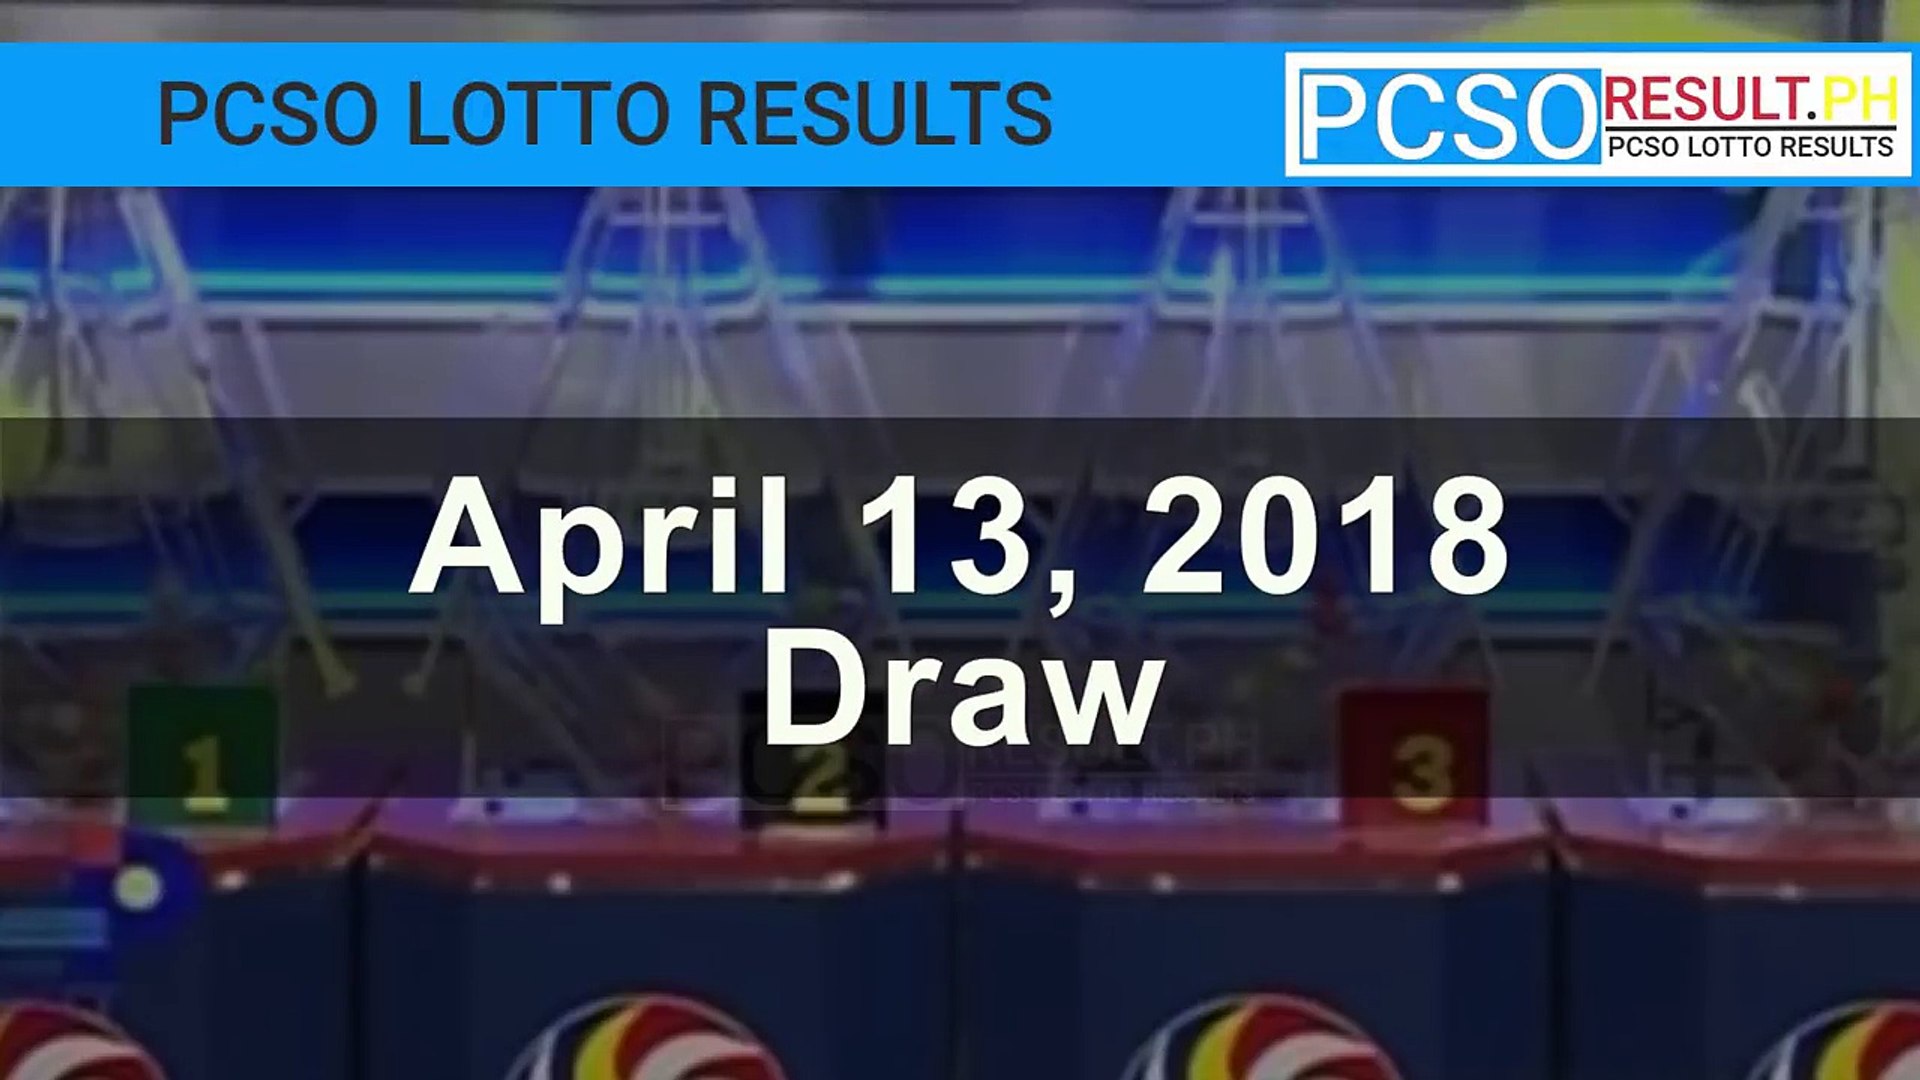 pcso lotto result nov 6 2018